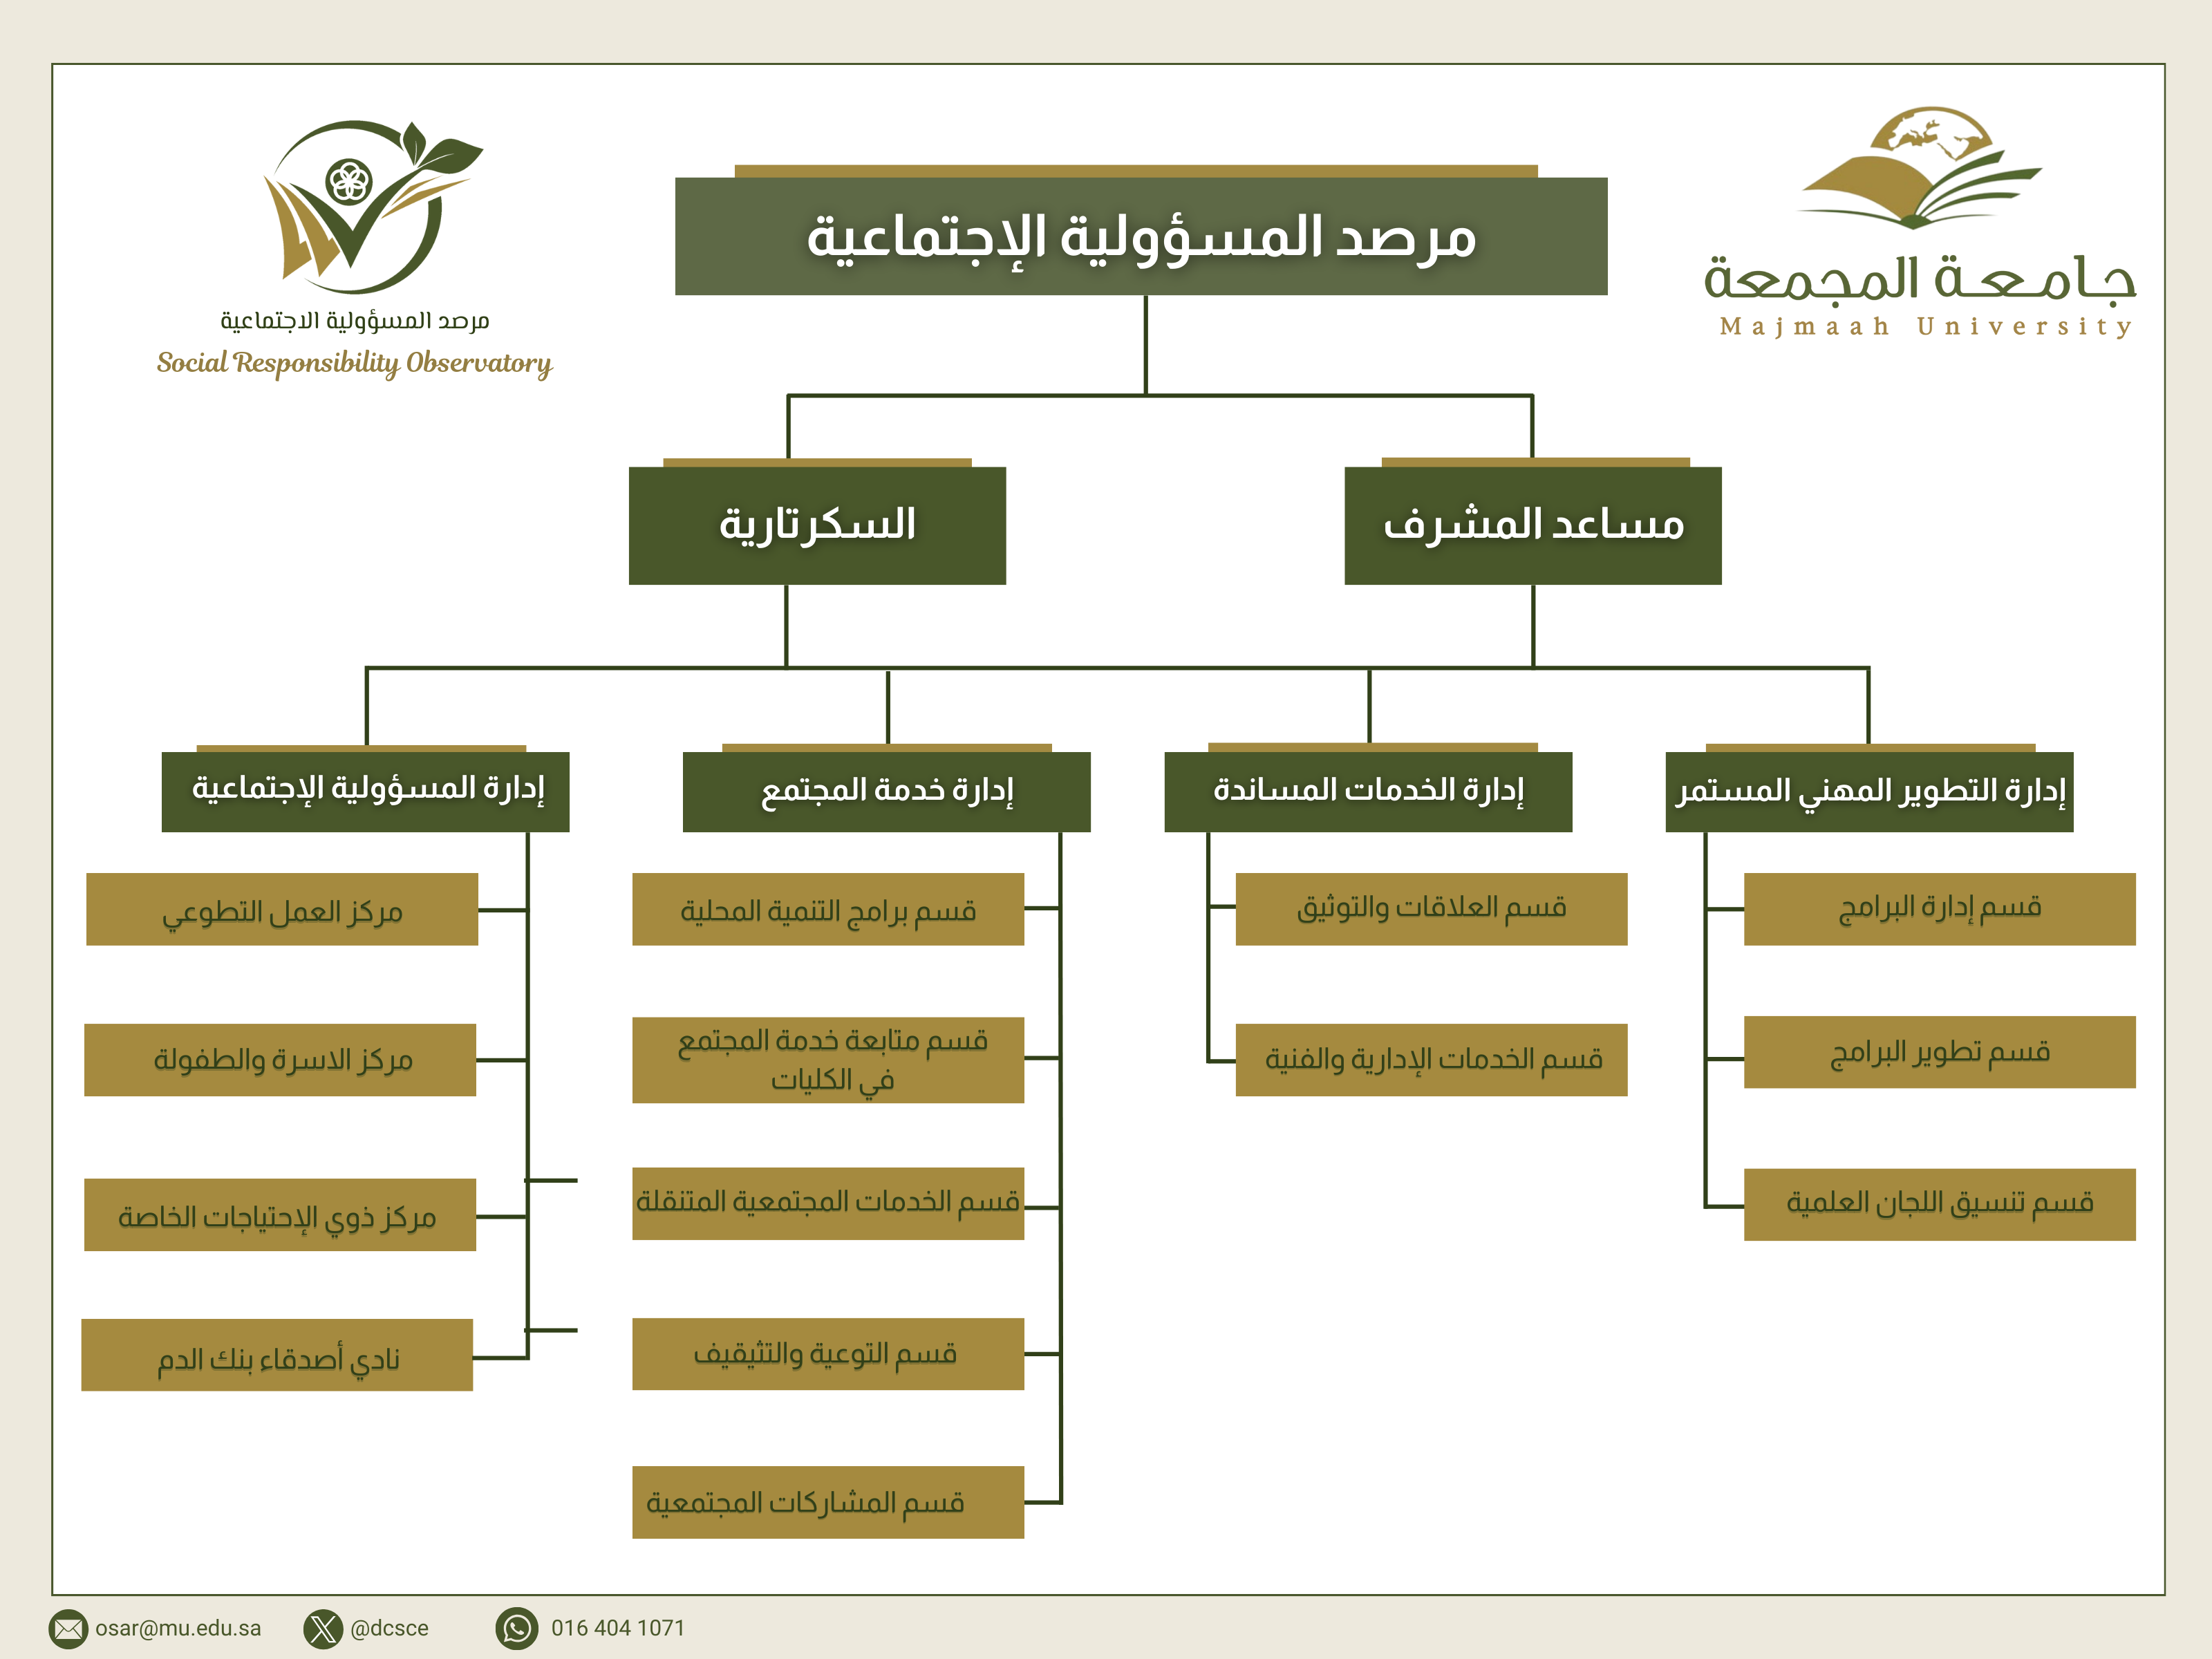 الهيكل التنظيمي لمرصد المسؤولية الاجتماعية في جامعة المجمعة